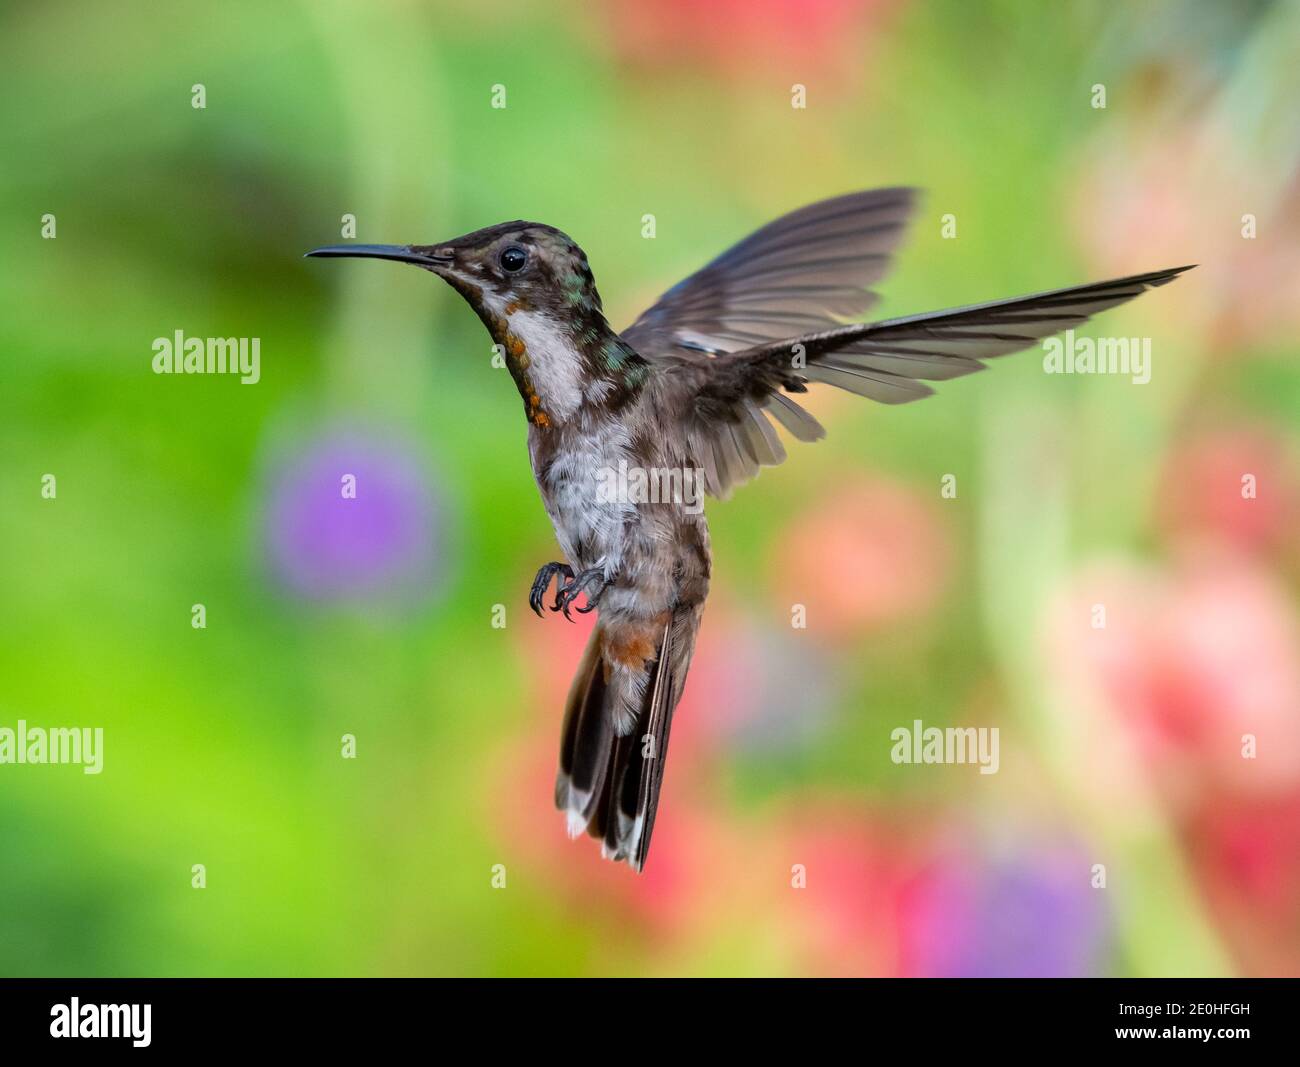 Un giovane colibrì Ruby Topaz che sorvolava in una posizione difensiva, uccello in un ambiente naturale. Uccello tropicale con sfondo colorato e sfocato. Foto Stock